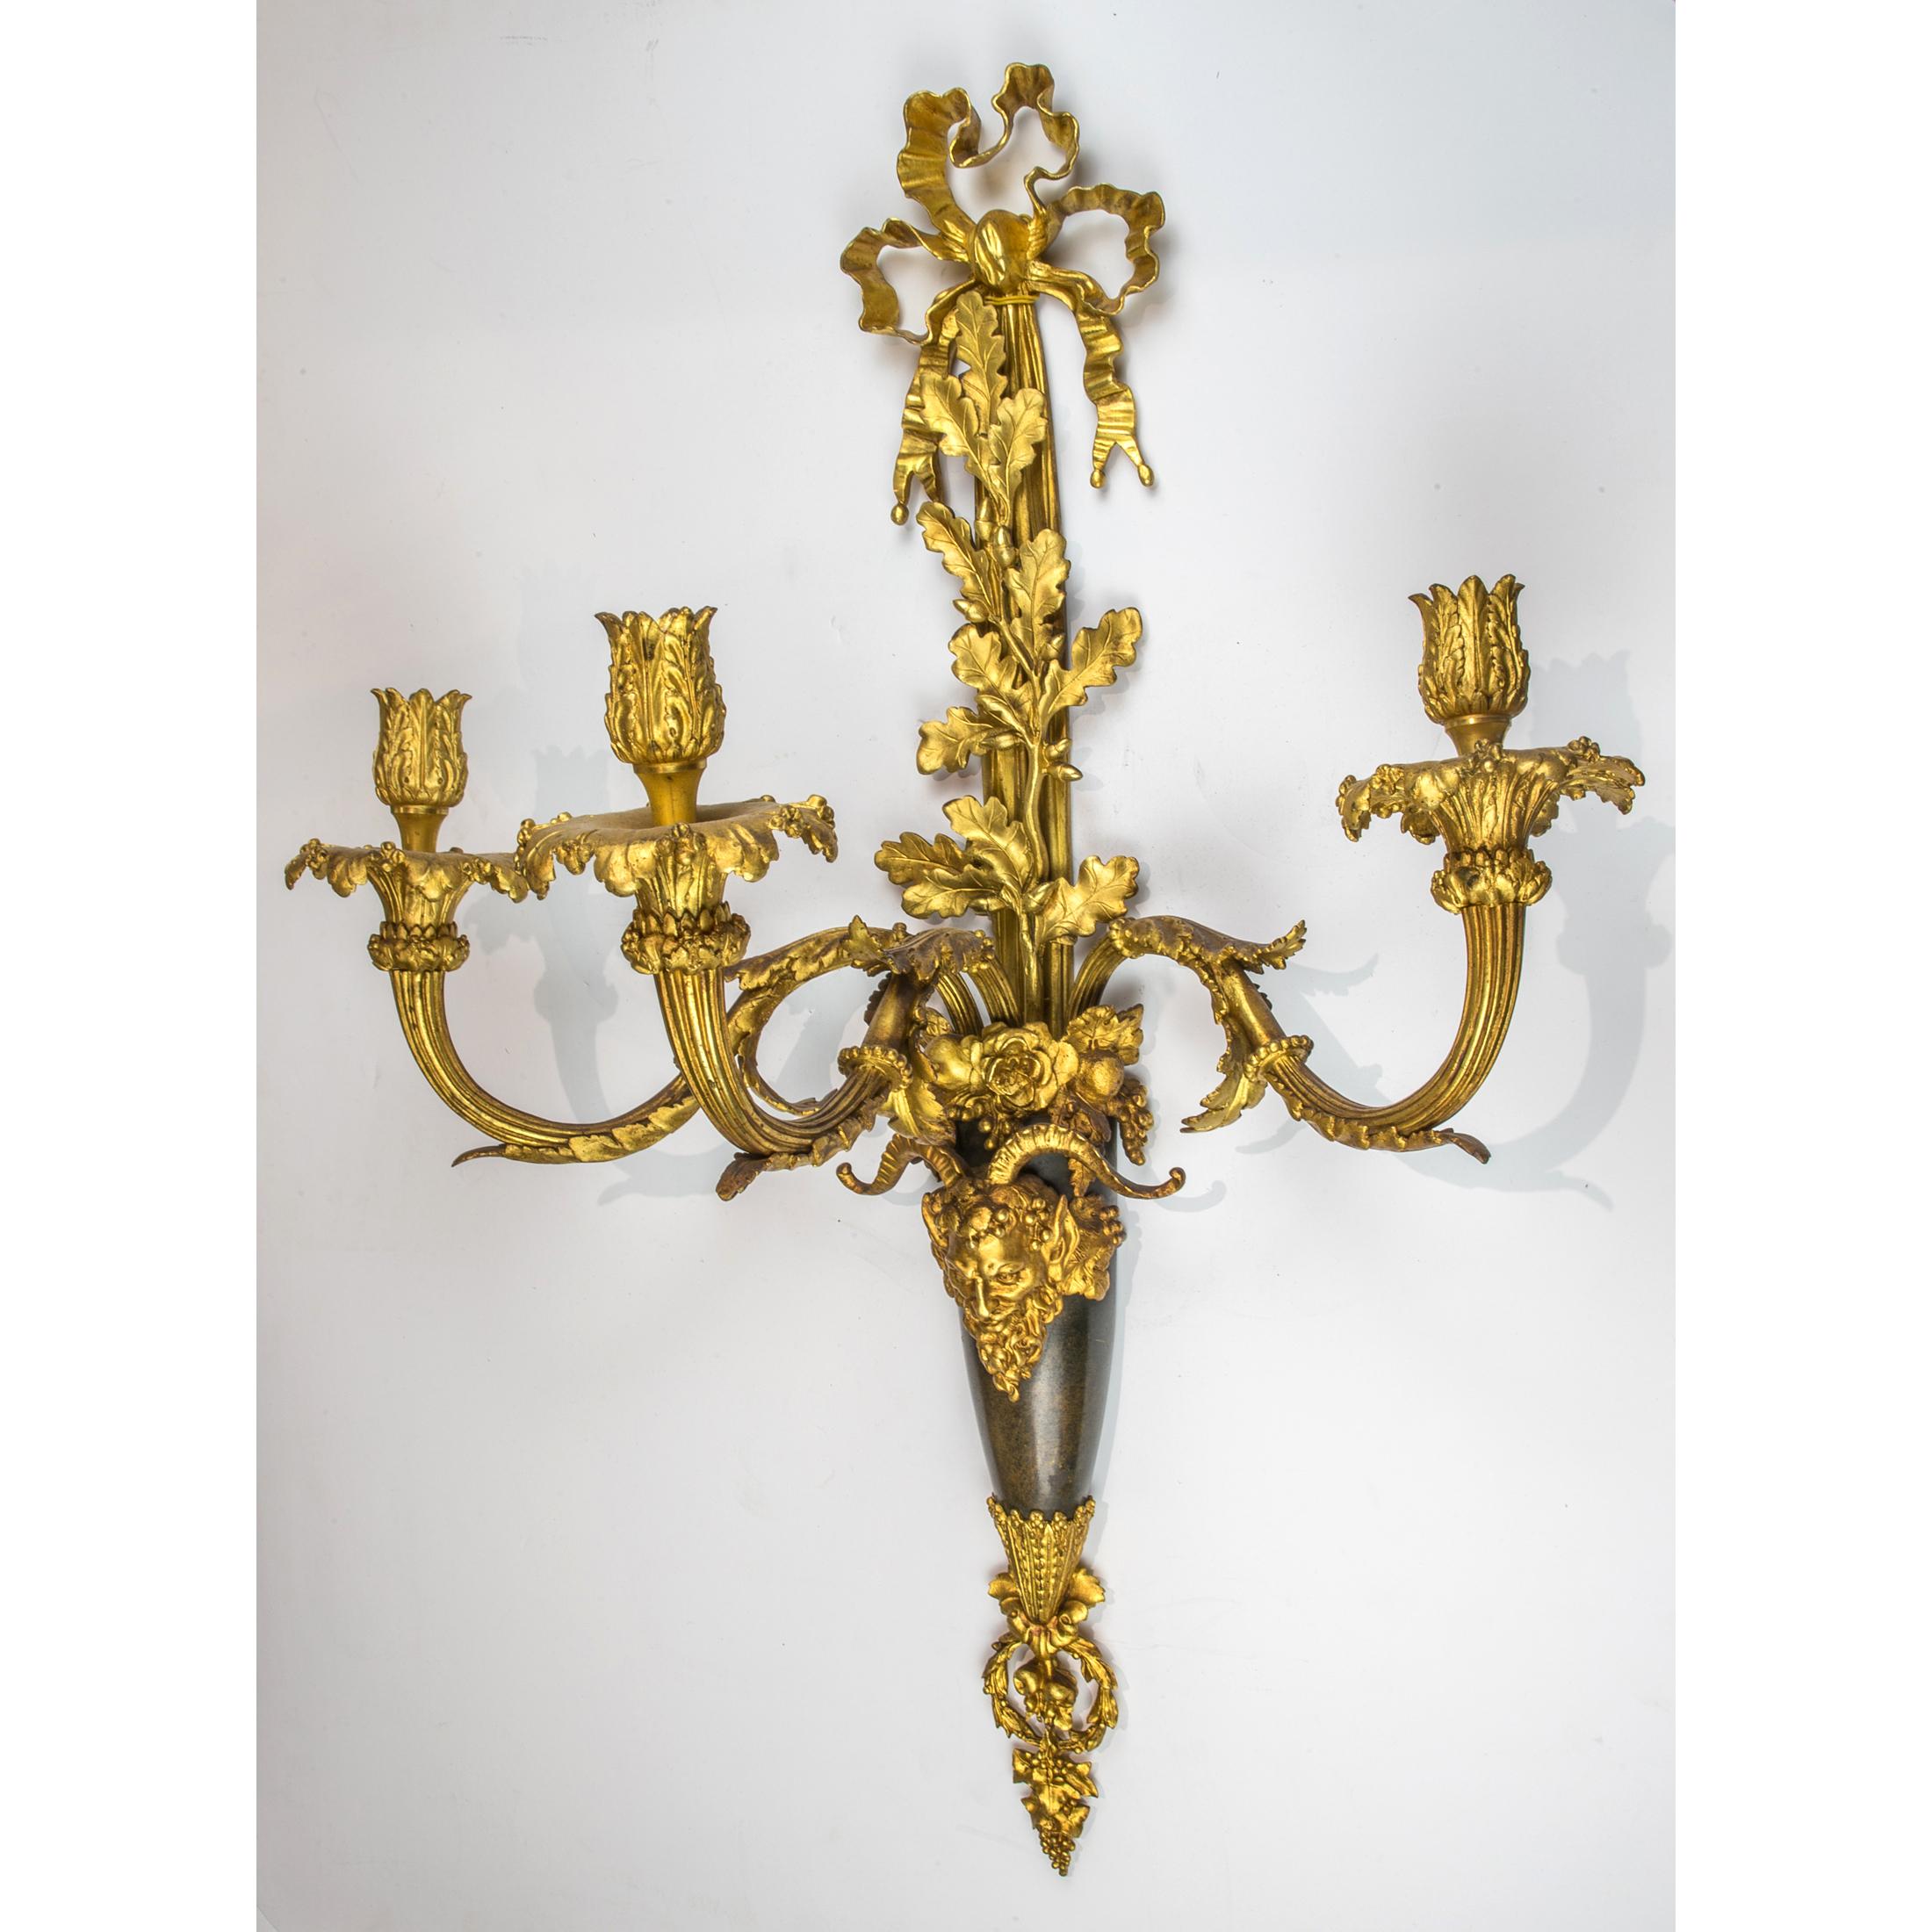 Paire d'appliques murales de style Louis XVI à trois lumières en bronze doré et patiné. La plaque arrière est composée d'un faisceau centré par un masque de bacchus et de trois branches d'acanthe et de vigne. 

Origine : Français
Date : Fin du